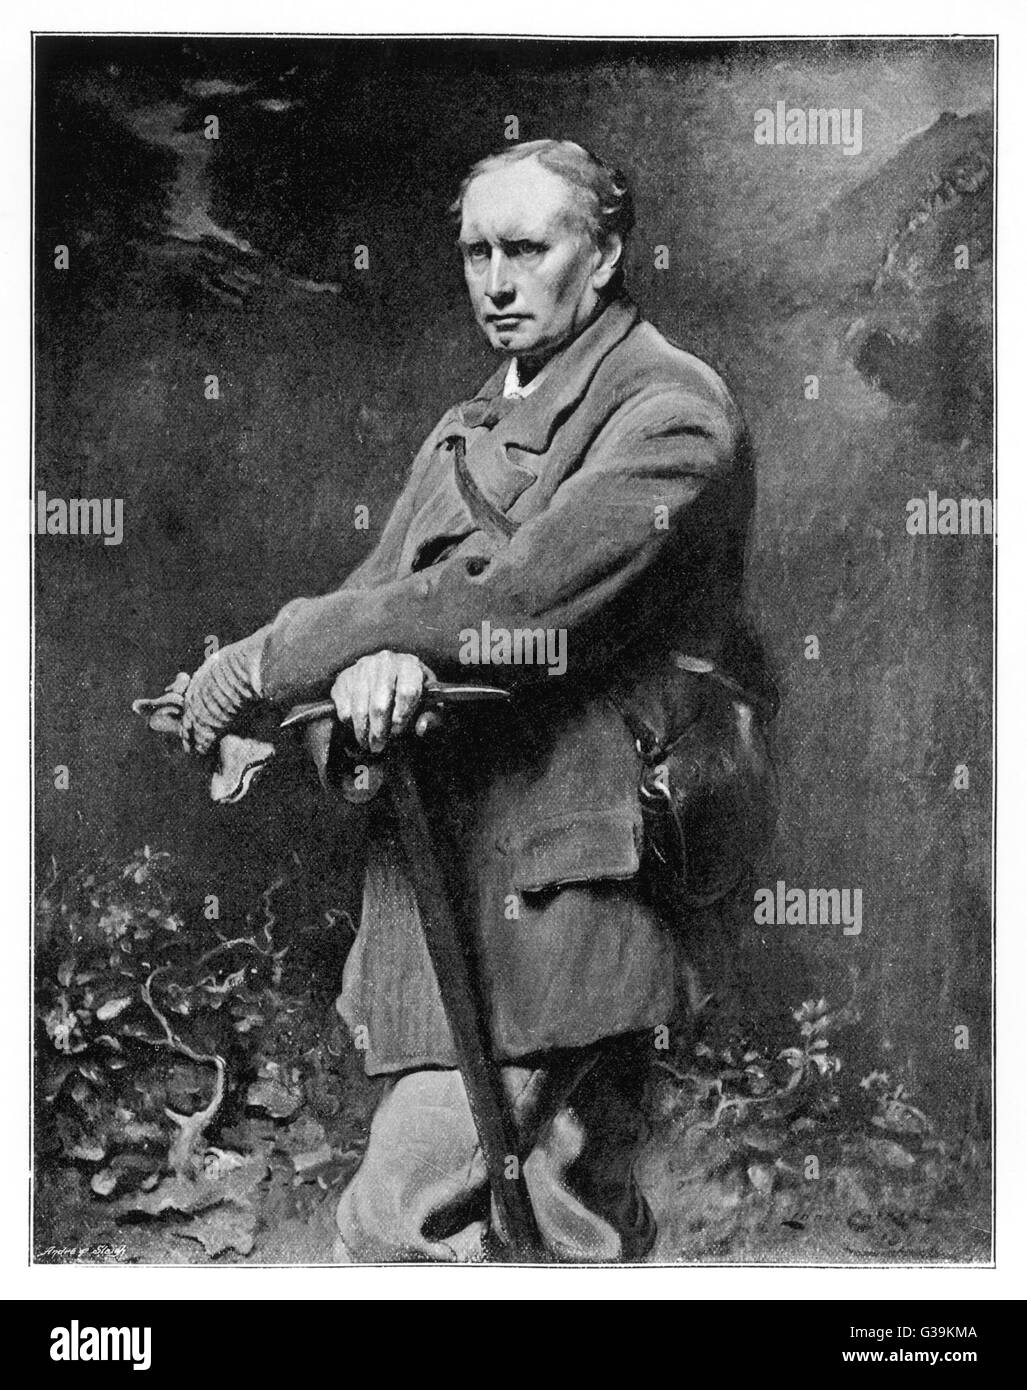 EDWARD WHYMPER produktiver Alpinist und talentierte Holzstecher. Seine Bildbände auf alpine Exploration mit Holzstichen.     Datum: 1840-1911 Stockfoto